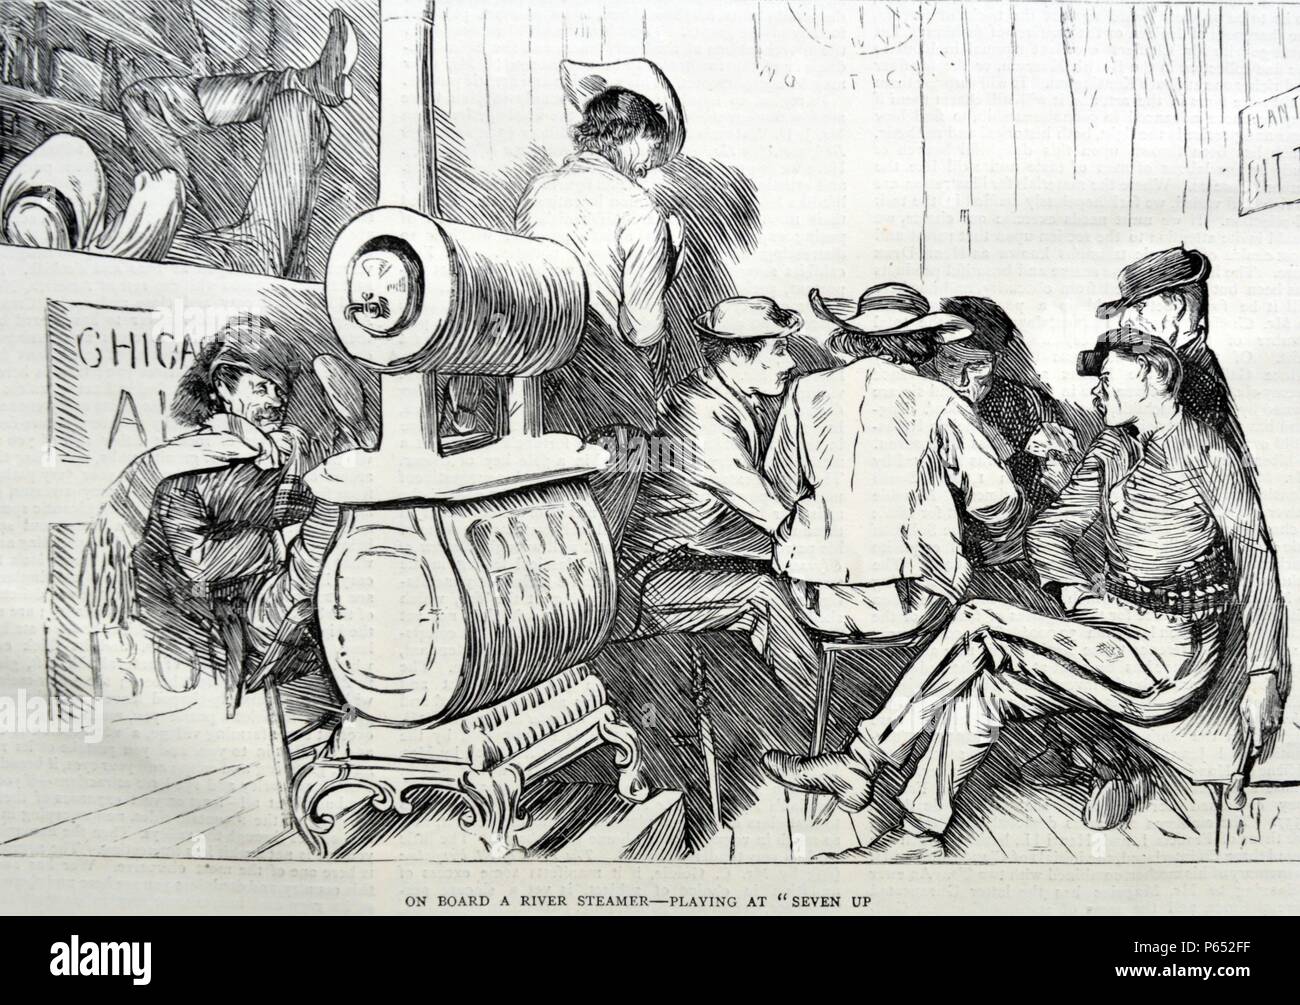 Incisione raffigura una scena a bordo di un sistema per la cottura a vapore sul fiume. Un gruppo di uomini stanno giocando il gioco di carte "anche". Datata 1870 Foto Stock